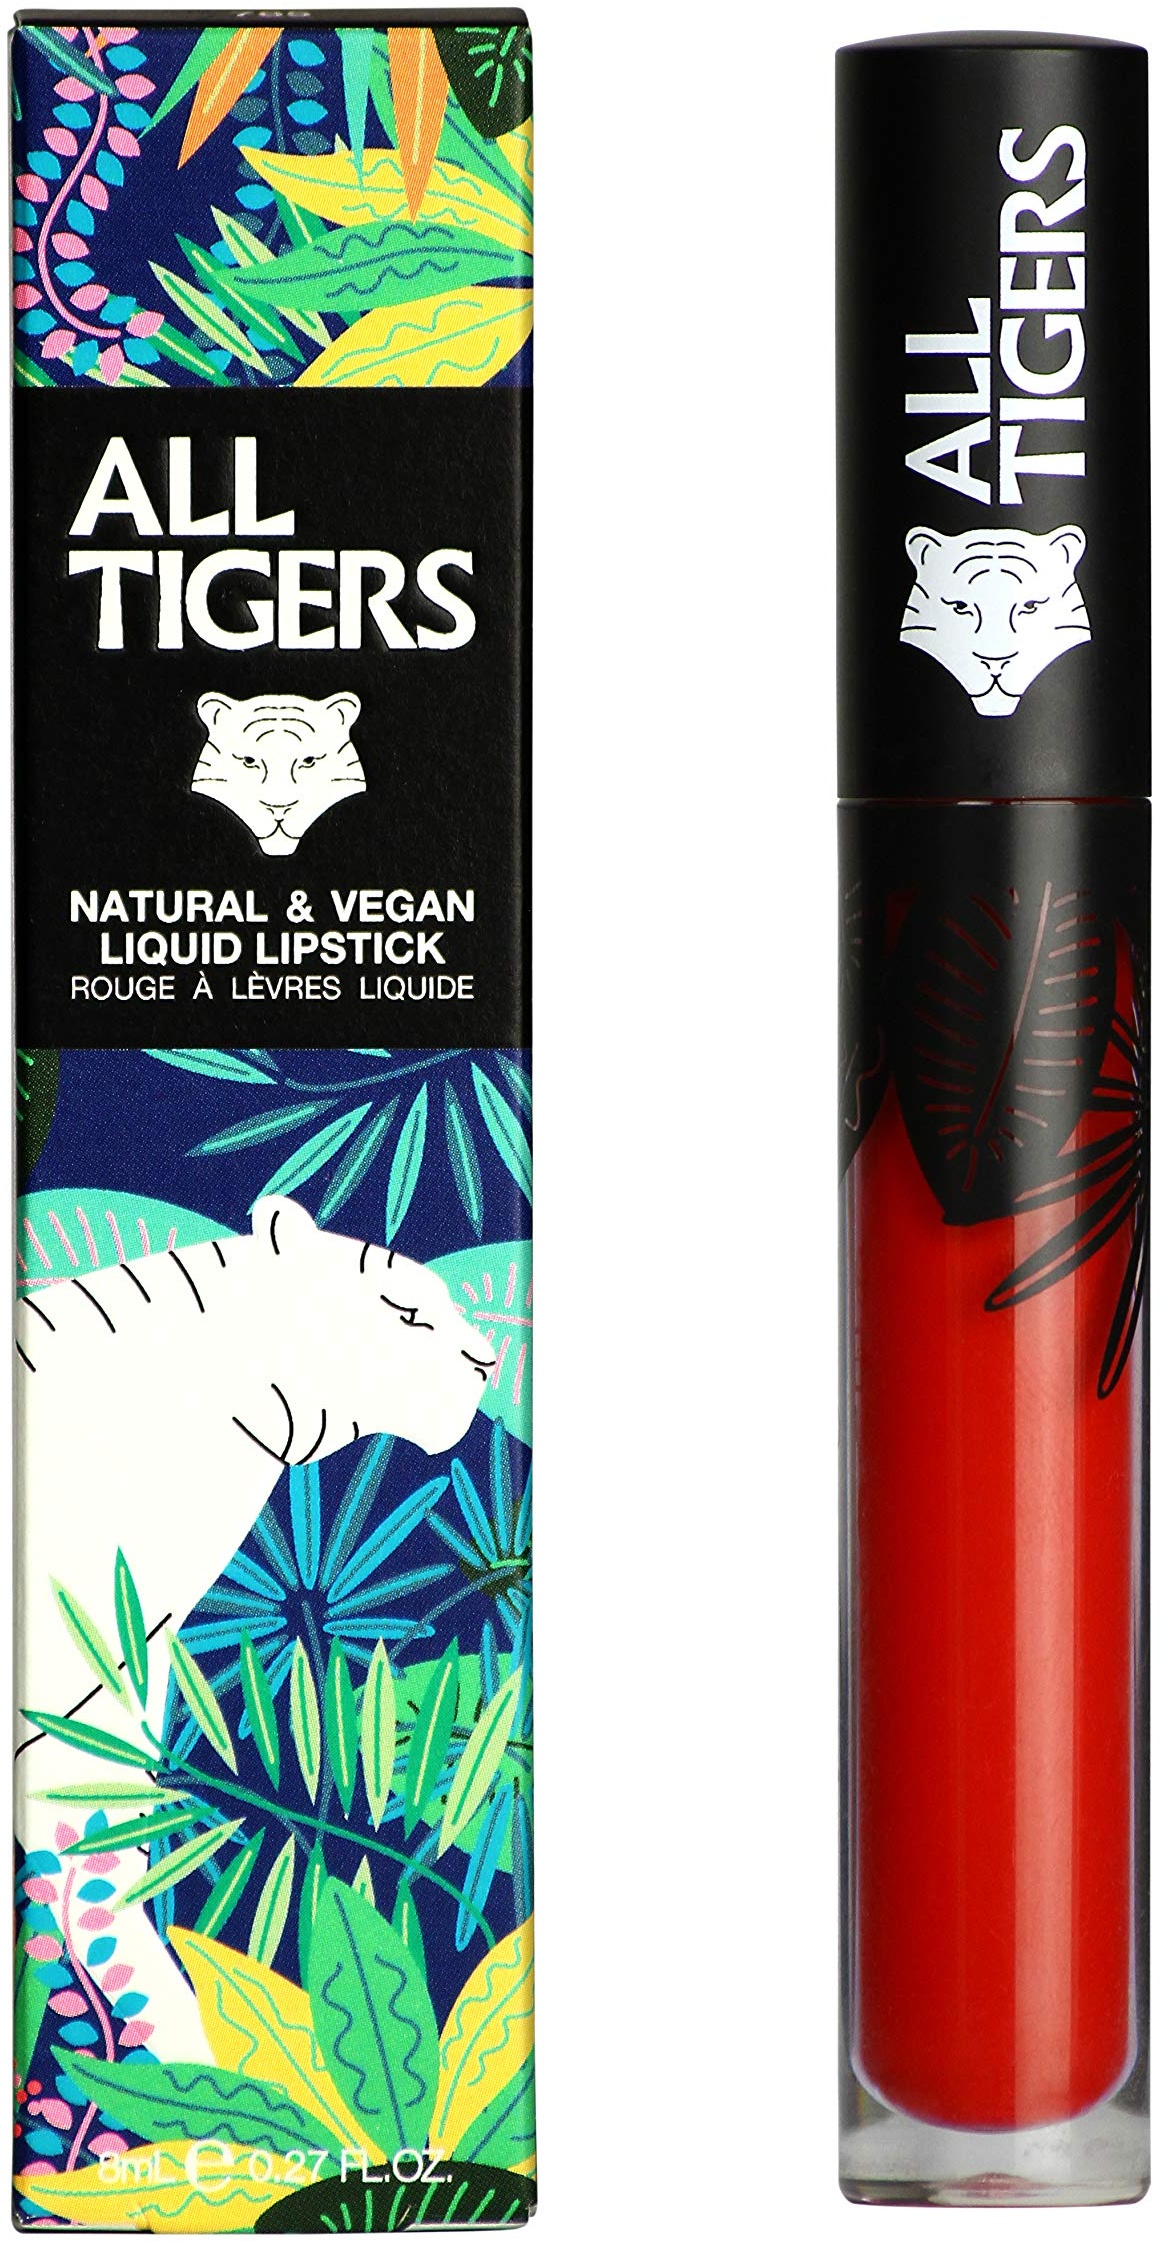 Liquid Lipstick - Matt, Vegan & Natürlich - Langer Halt - Farbe: Rot "Call Me Queen" 888 - Lippenstift ohne Bestandteile auf Erdölbasis - Bio-Inhaltsstoffe - ALL TIGERS